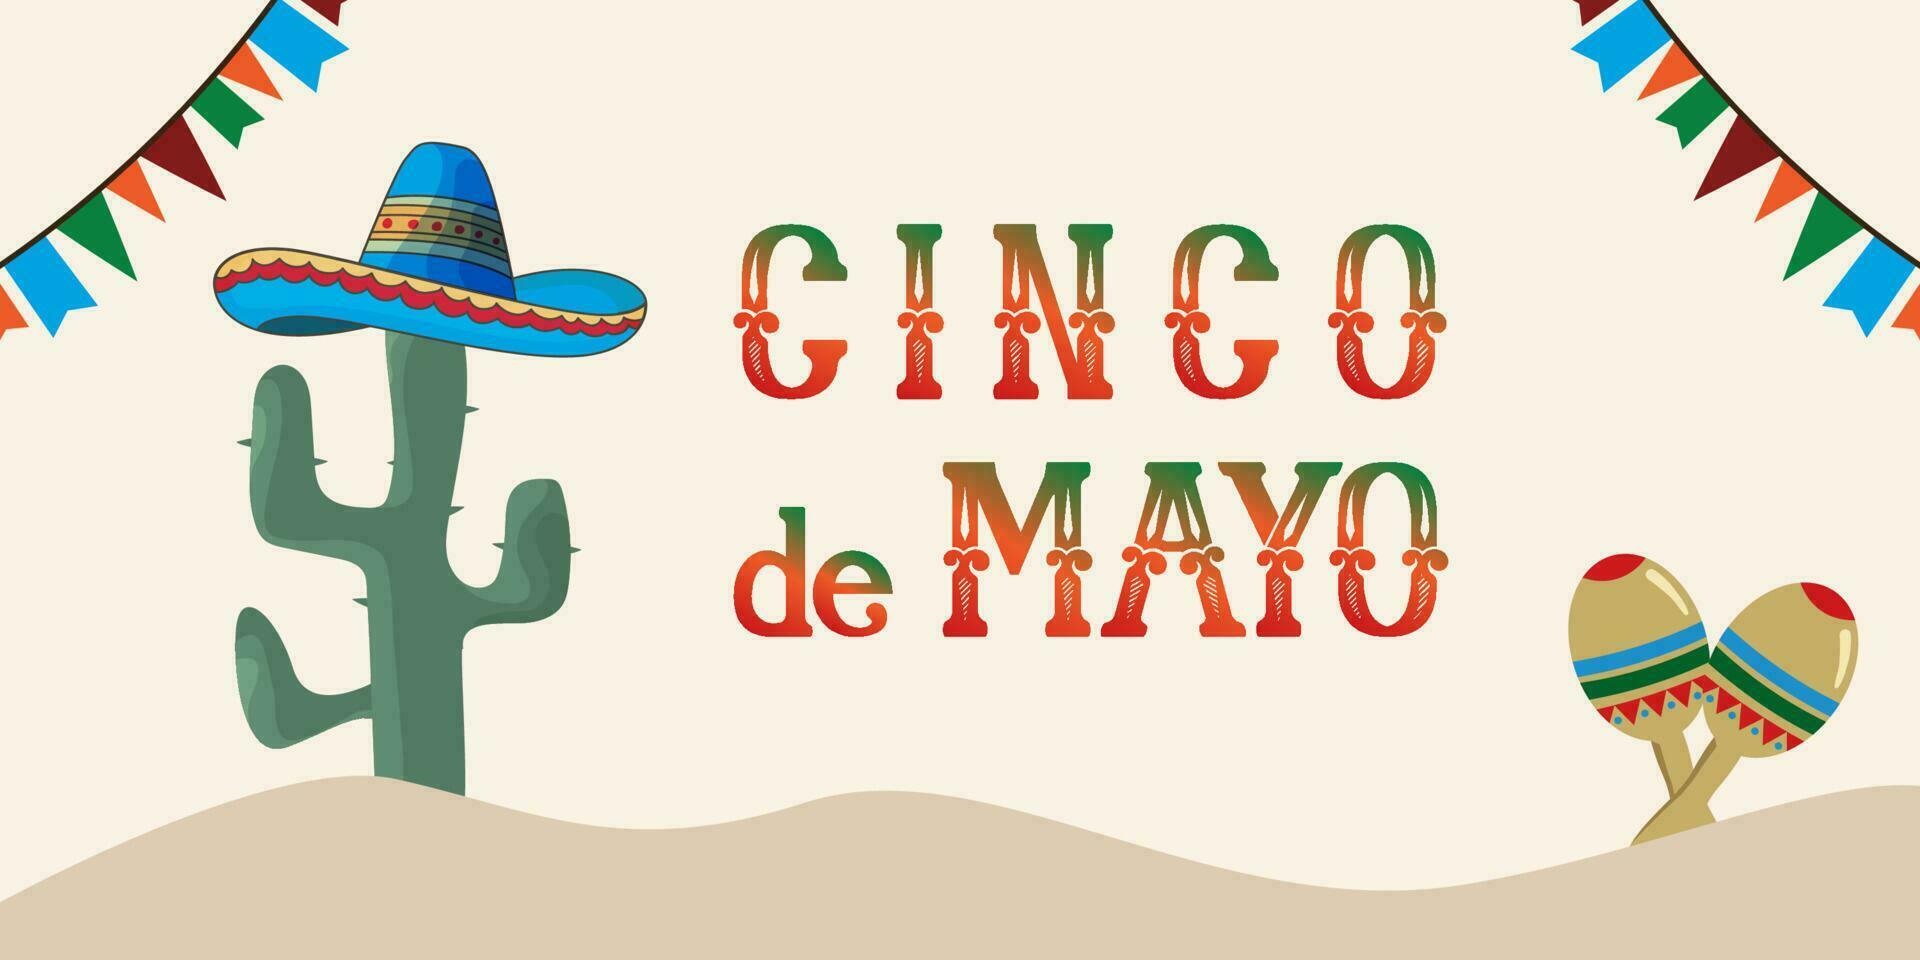 cinco de mayo baner mall för mexico oberoende firande med flaggor, blommor, dekorationer- Maj 5, statlig Semester i Mexiko. fiesta baner och affisch design. vektor